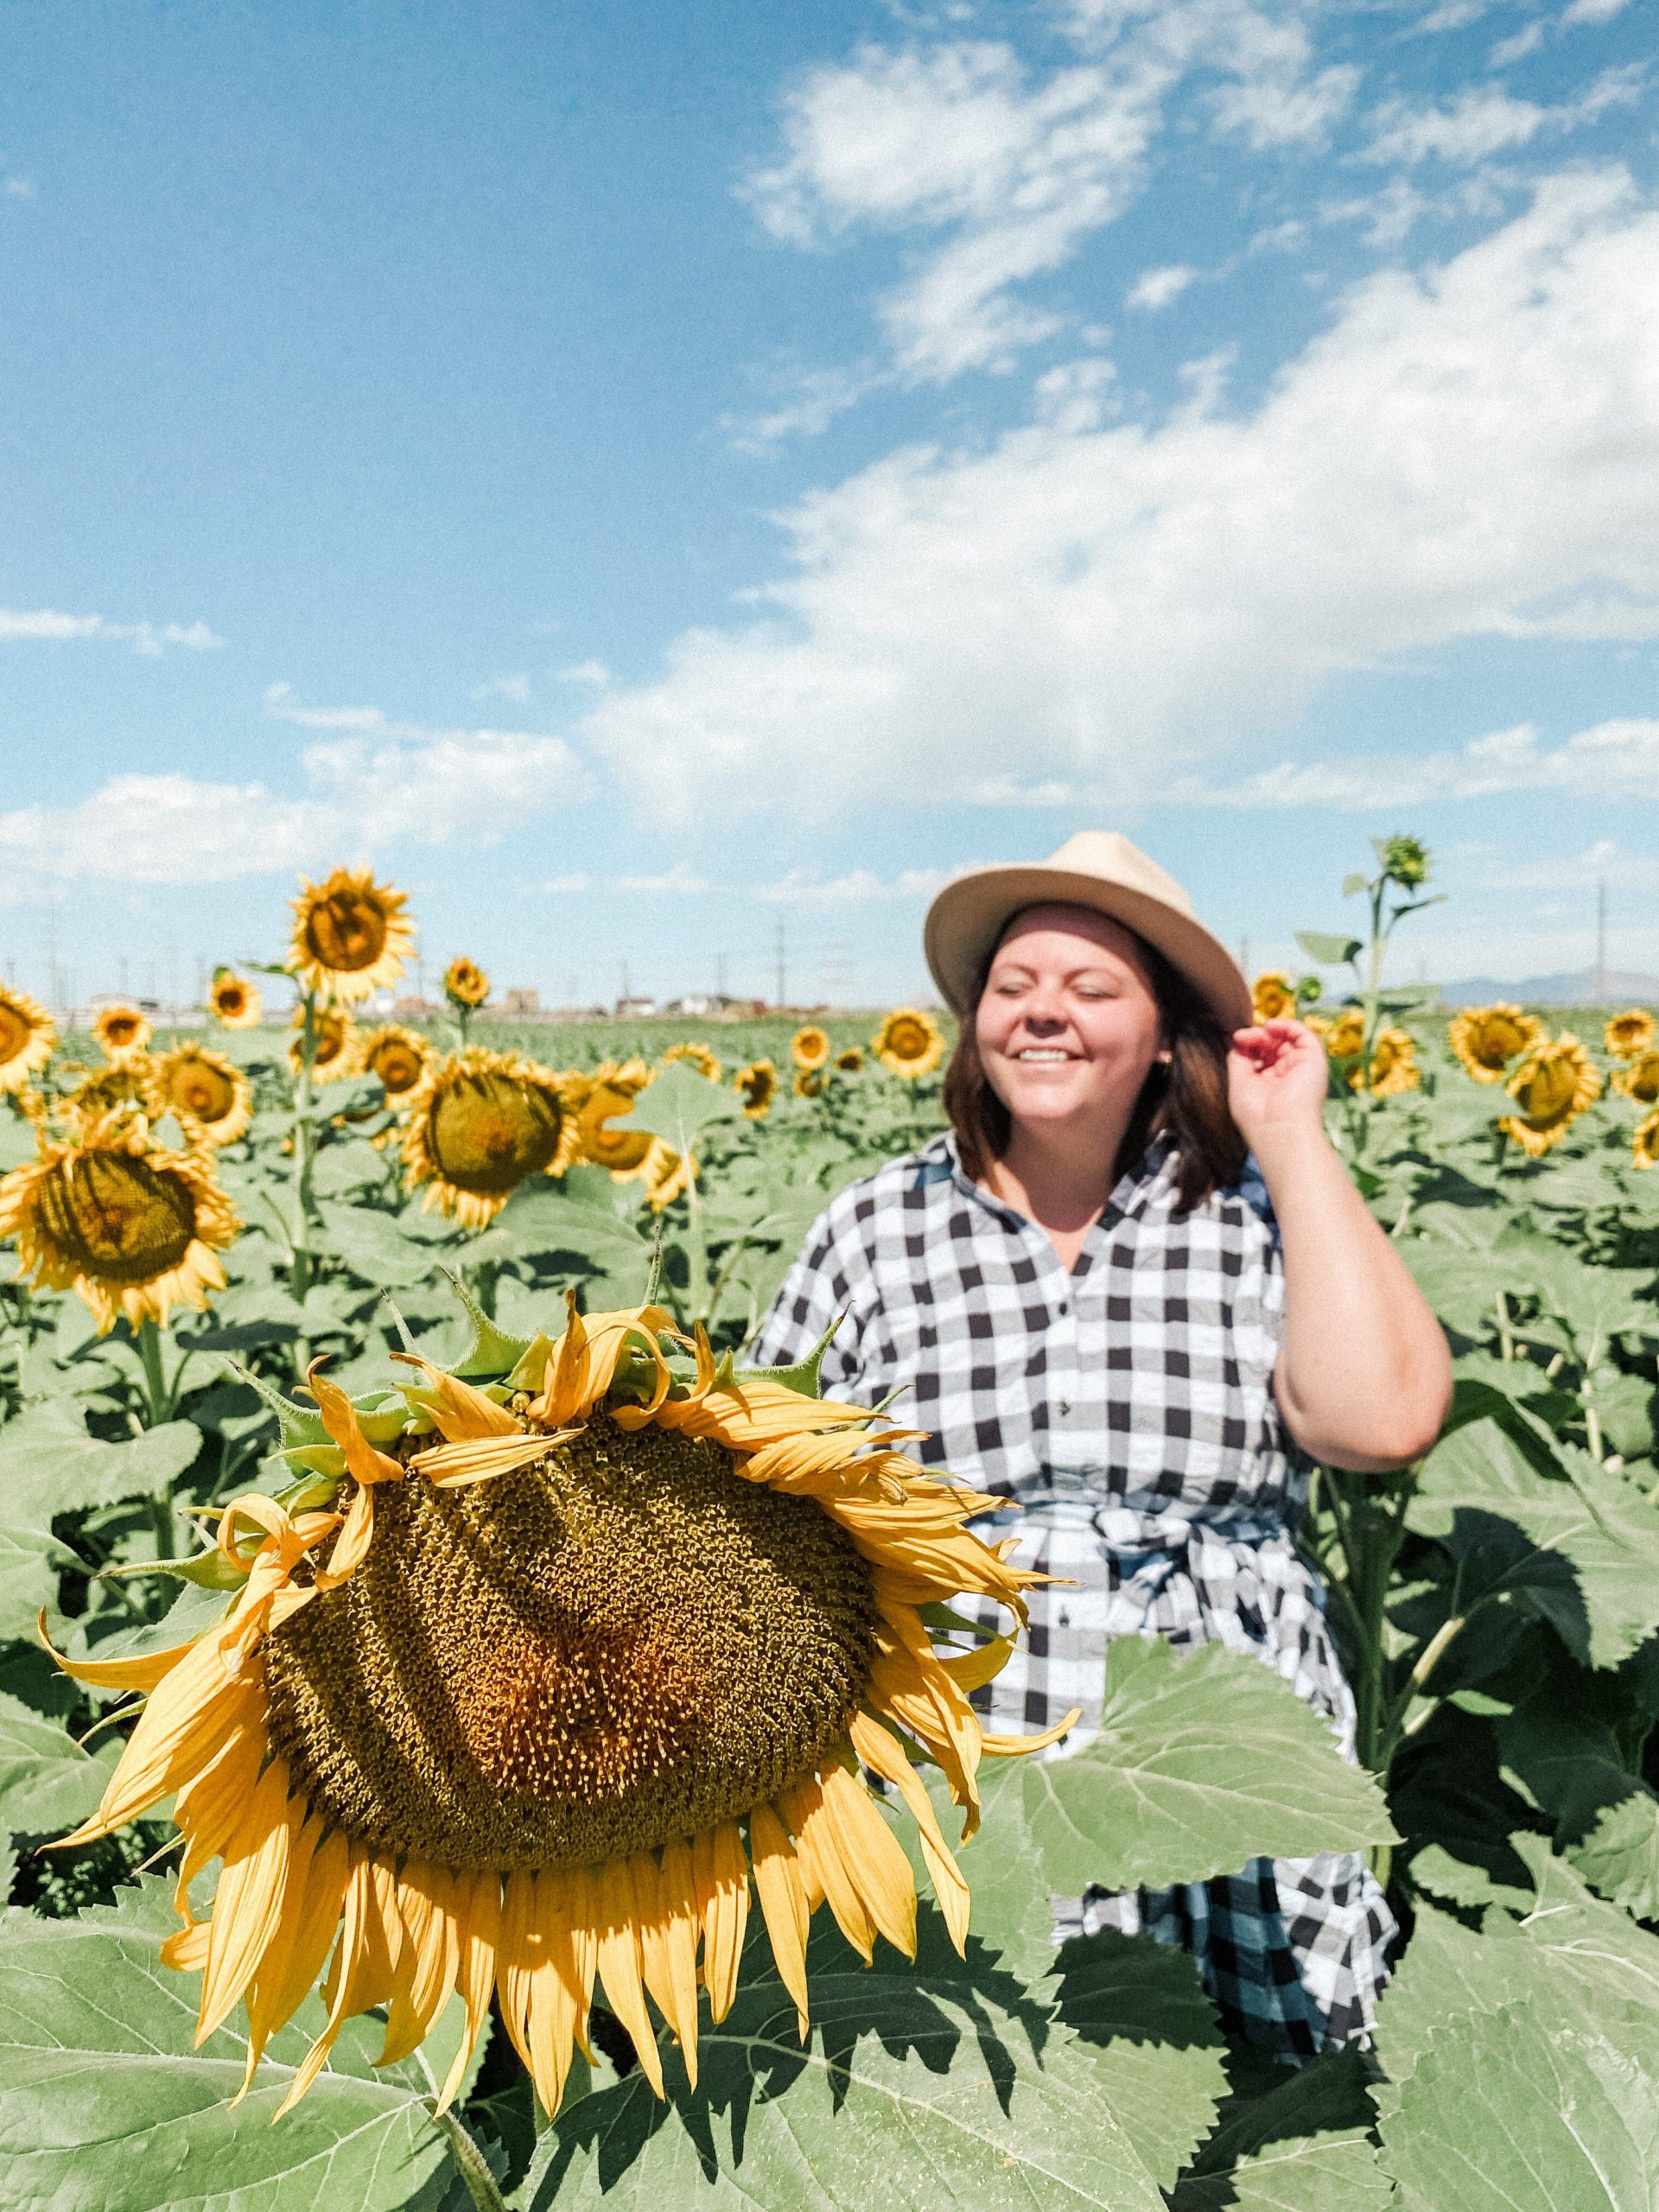 sunflower festival in utah 